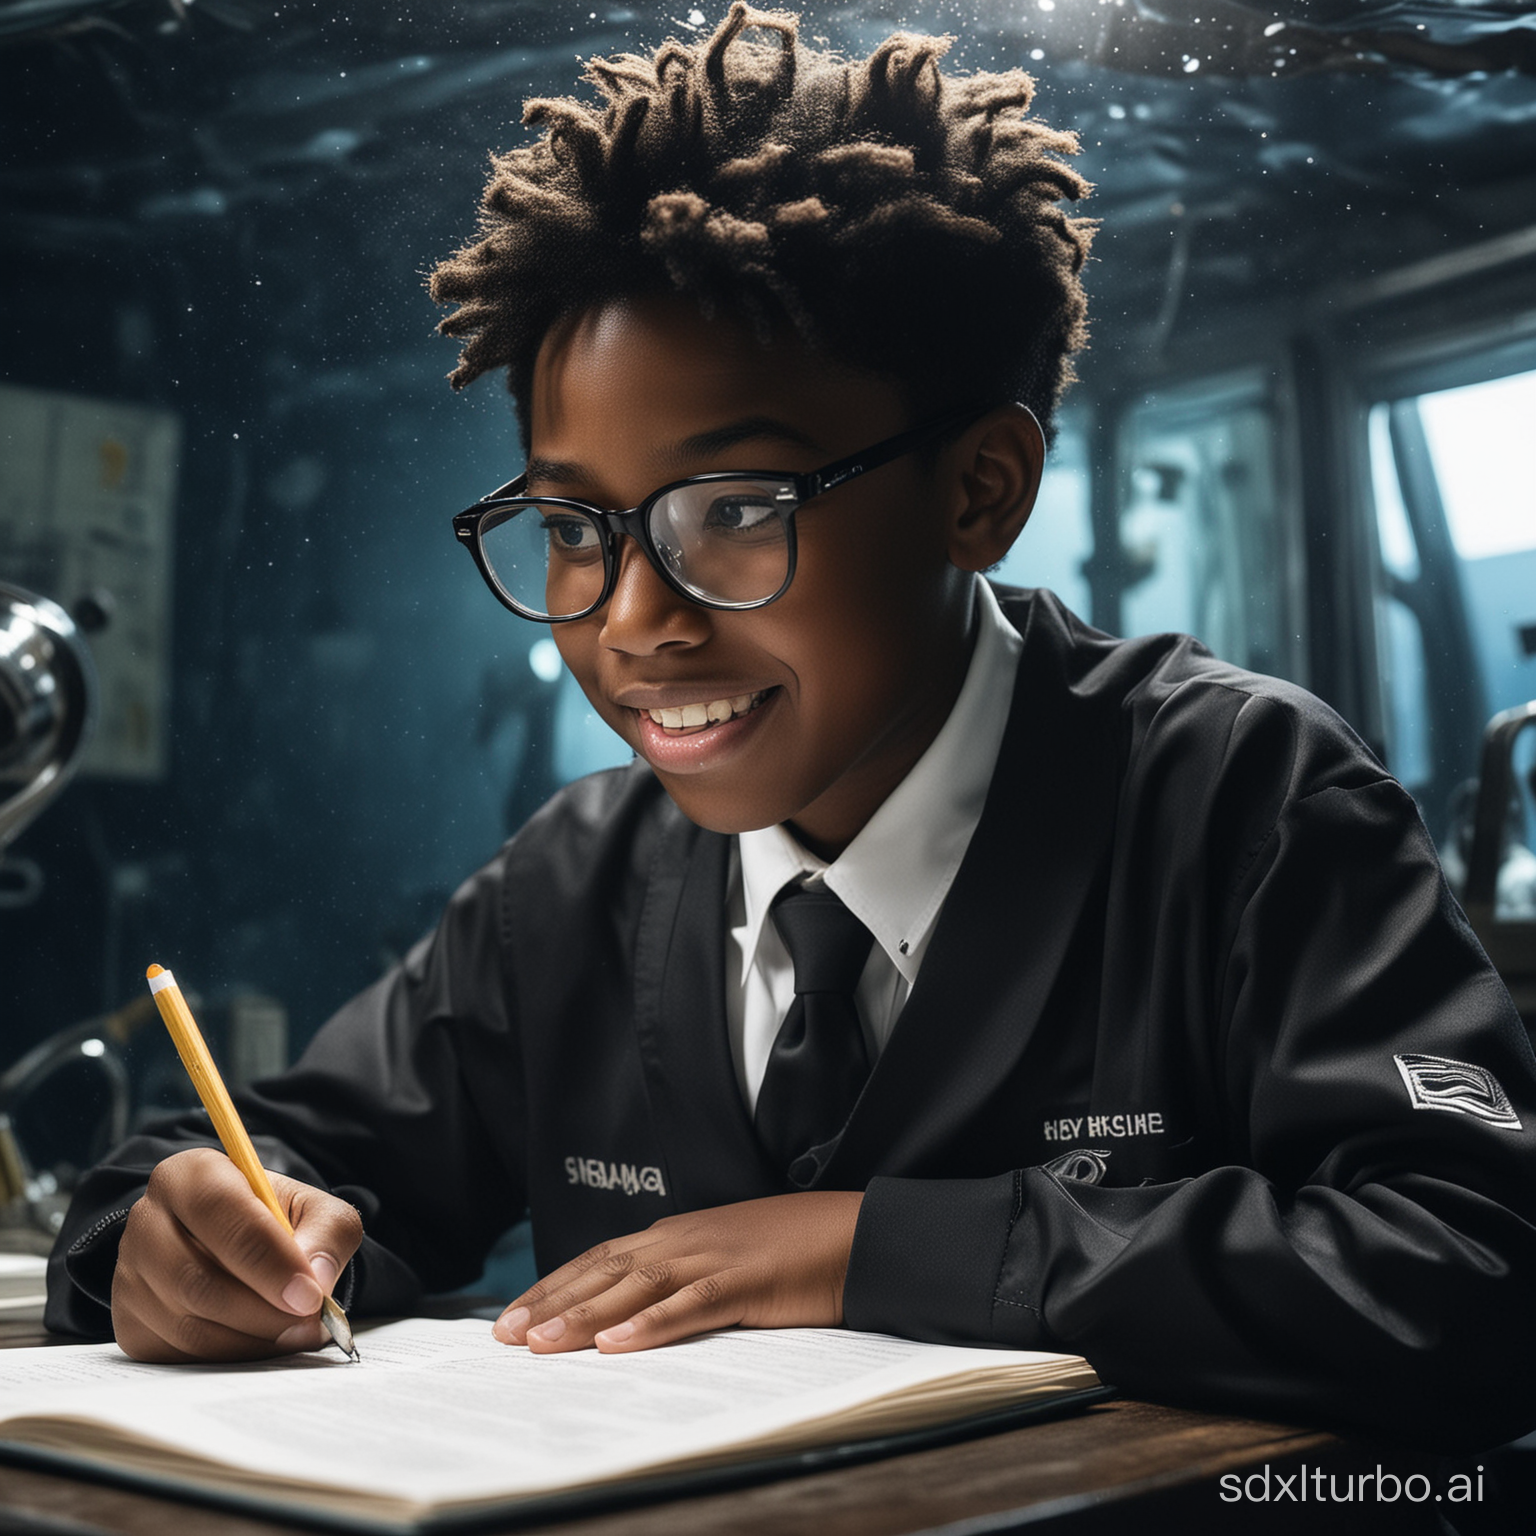 一个龅牙中等大小的眼睛 带黑框眼镜 黑色肤色的平头小男孩穿着初中校服 在深海里写作业